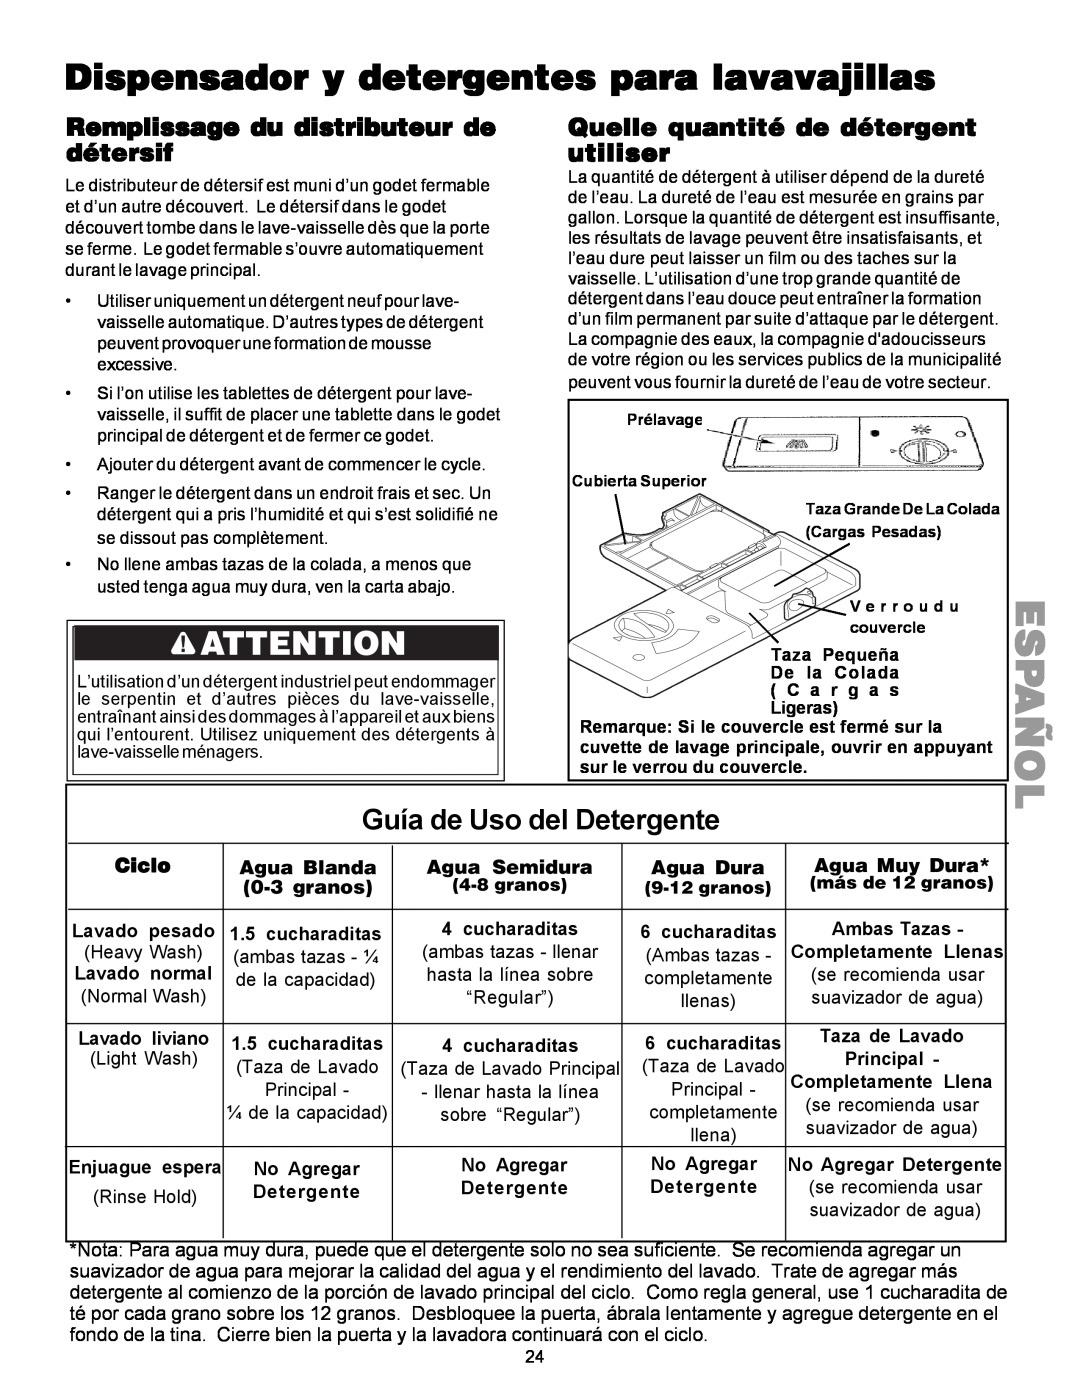 Kenmore 587.1441 Dispensador y detergentes para lavavajillas, Guía de Uso del Detergente, Español, Ciclo, Agua Blanda 